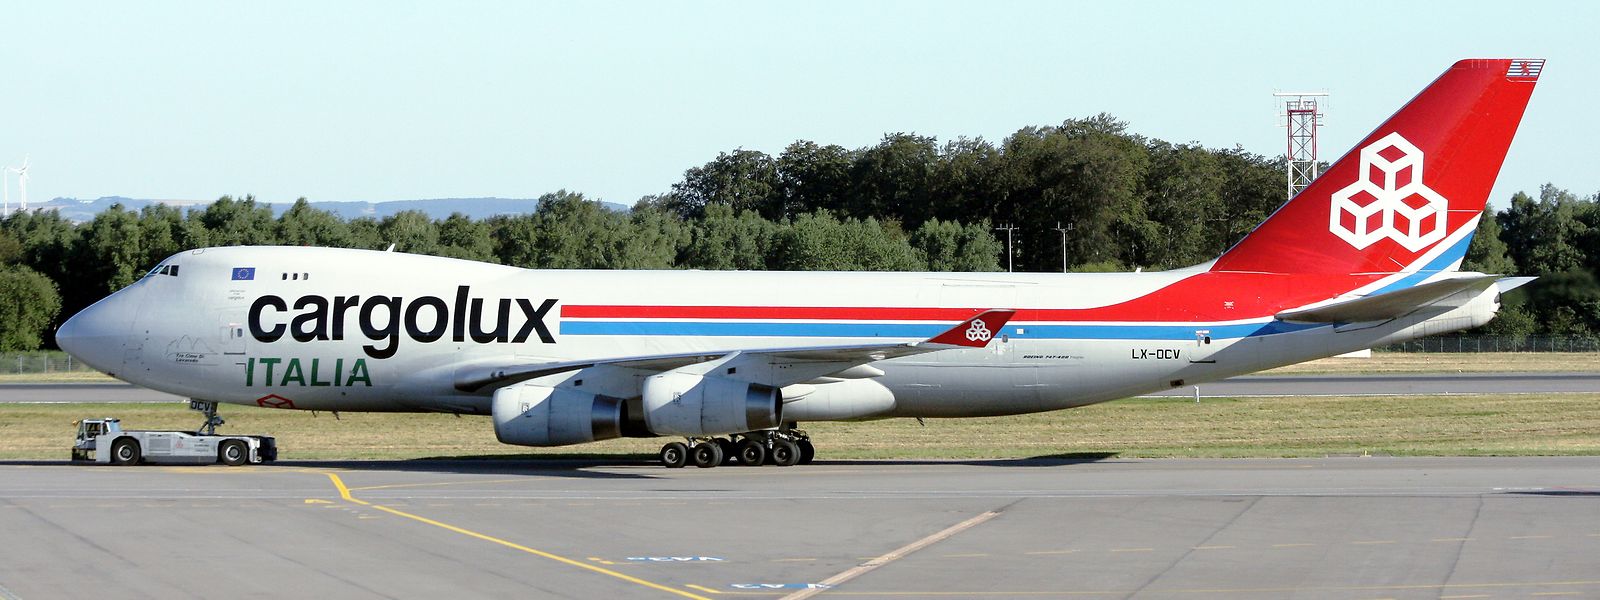 Archivfoto einer Boieng 747 in den Farben von Cargolux Italia.